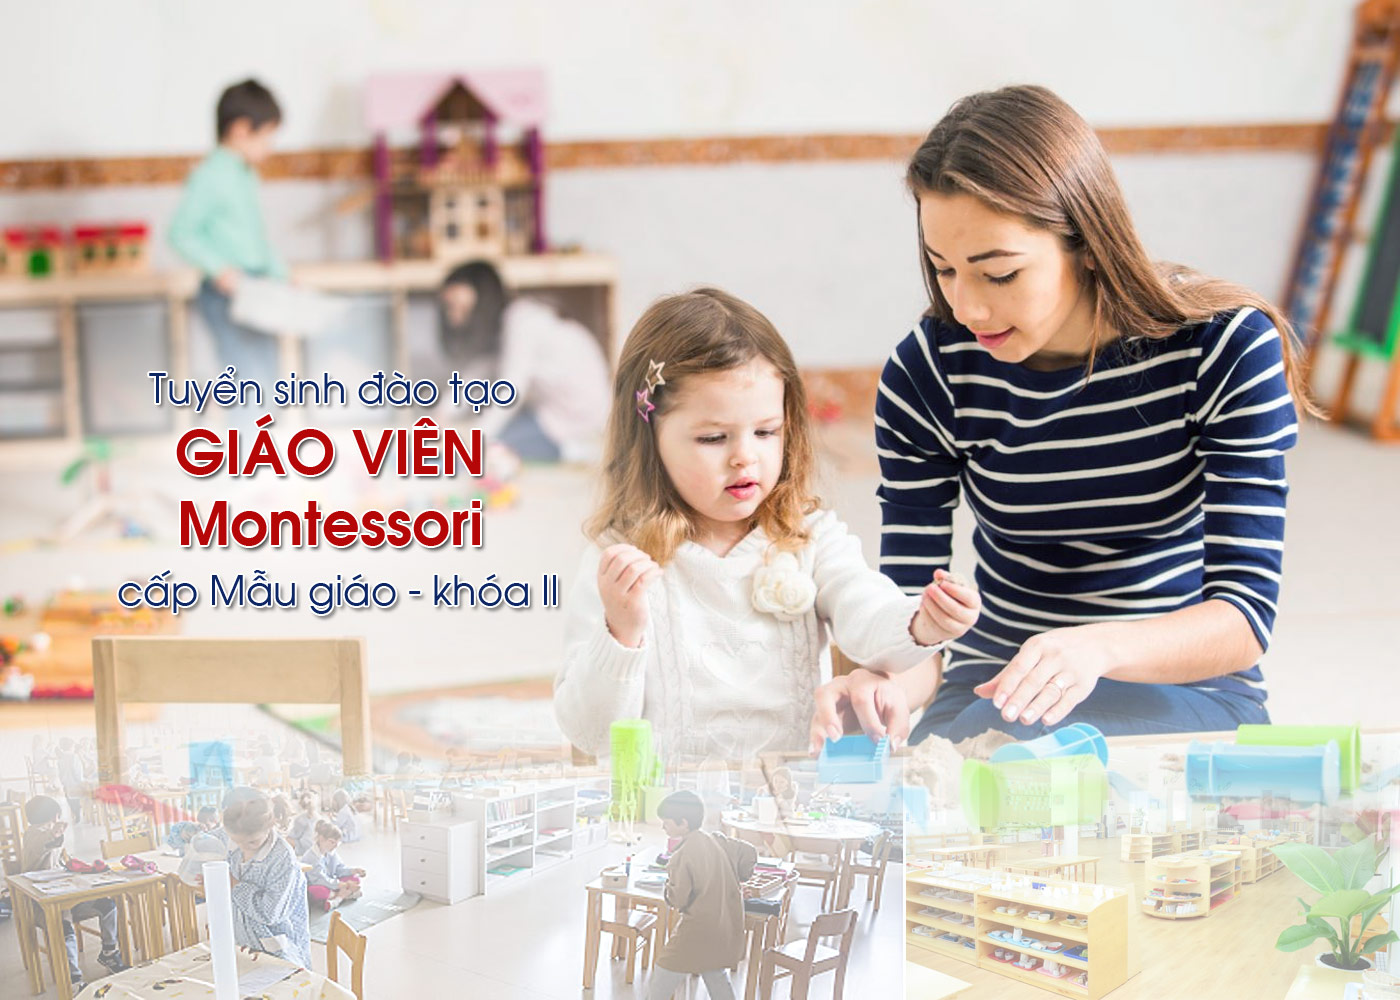 Tuyển sinh đào tạo giáo viên Montessori cấp Mẫu giáo khóa II - Ảnh 1